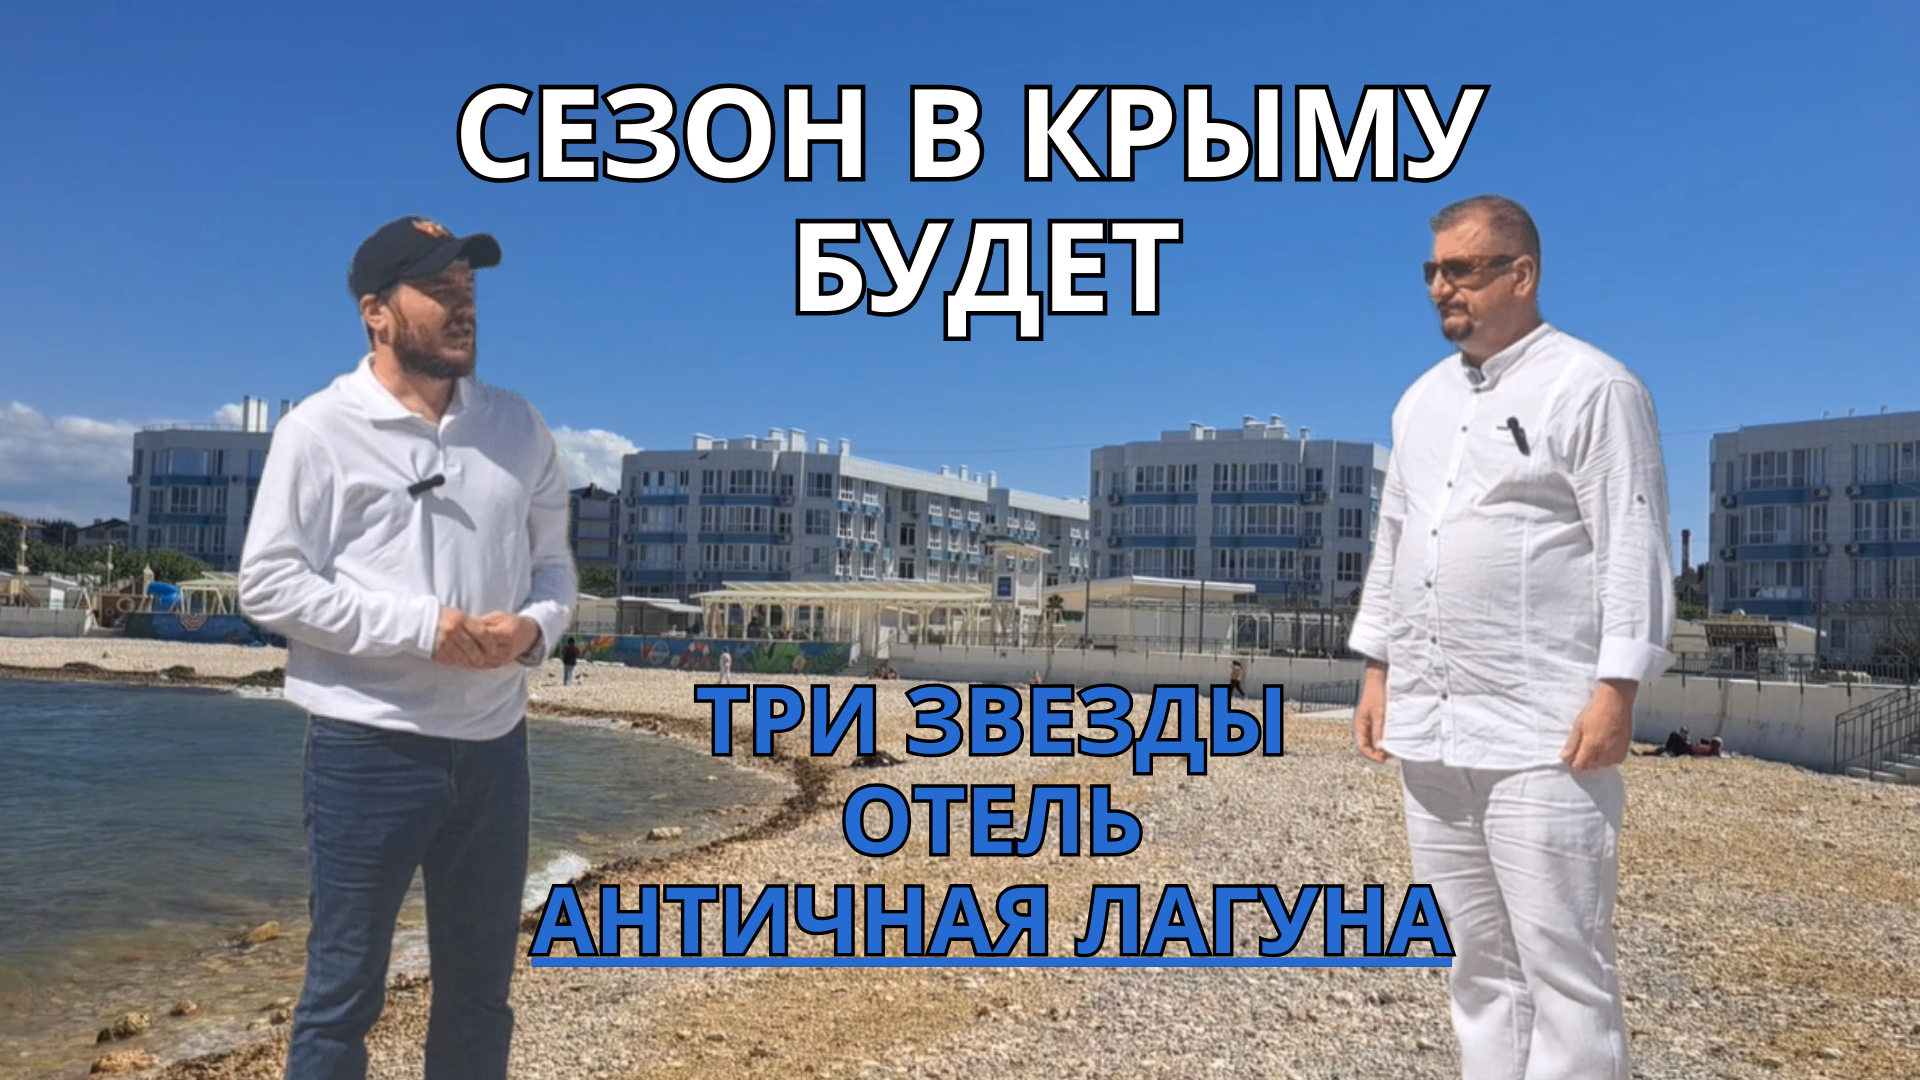 СЕЗОН В КРЫМУ БУДЕТ
Отель "Античная Лагуна"